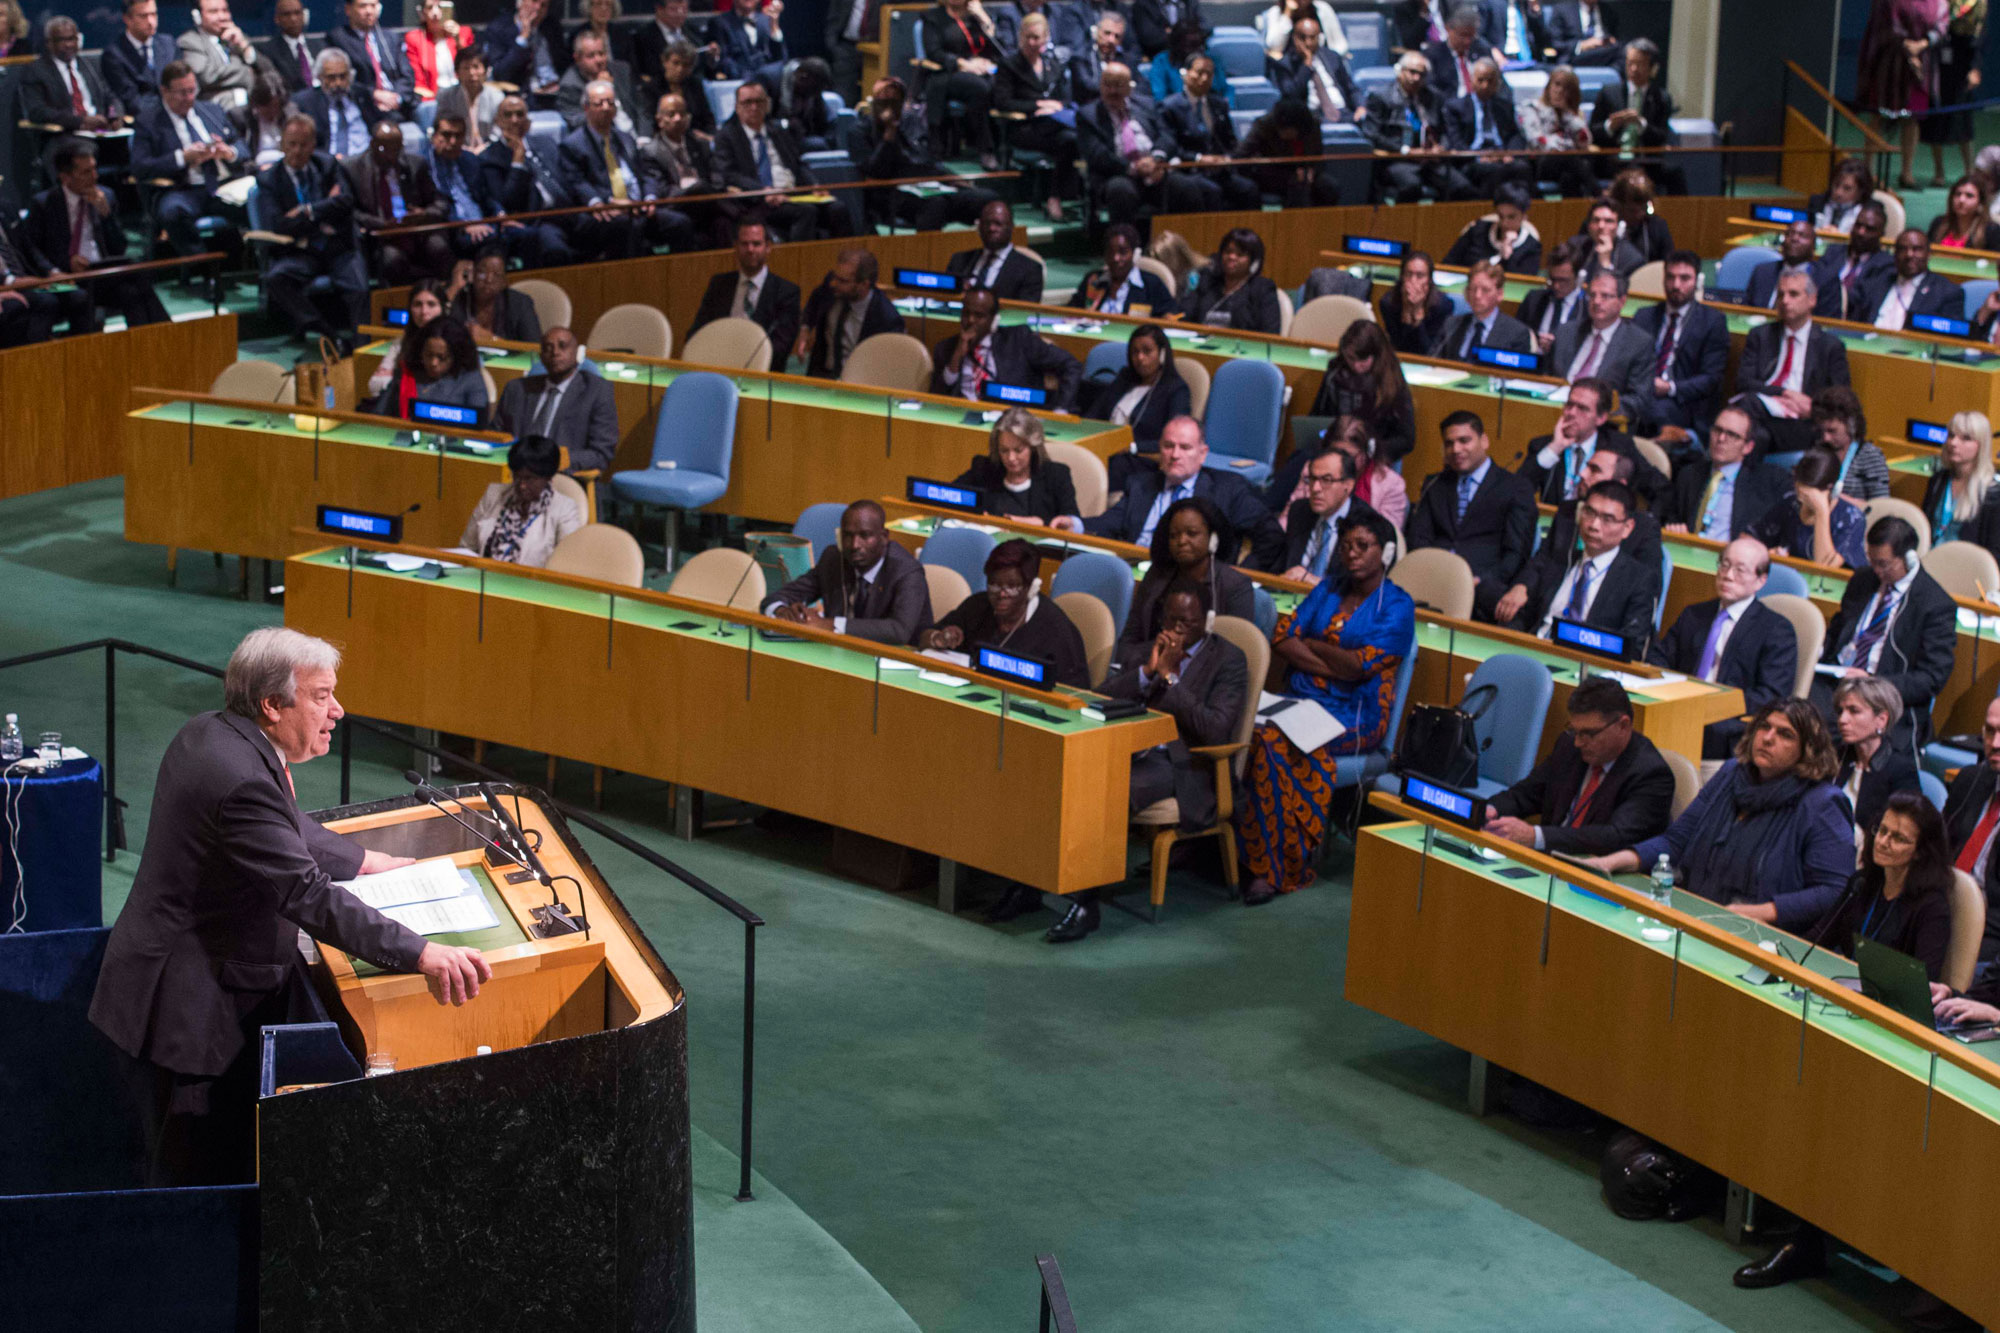 António Guterres named as the next UN Secretary-General